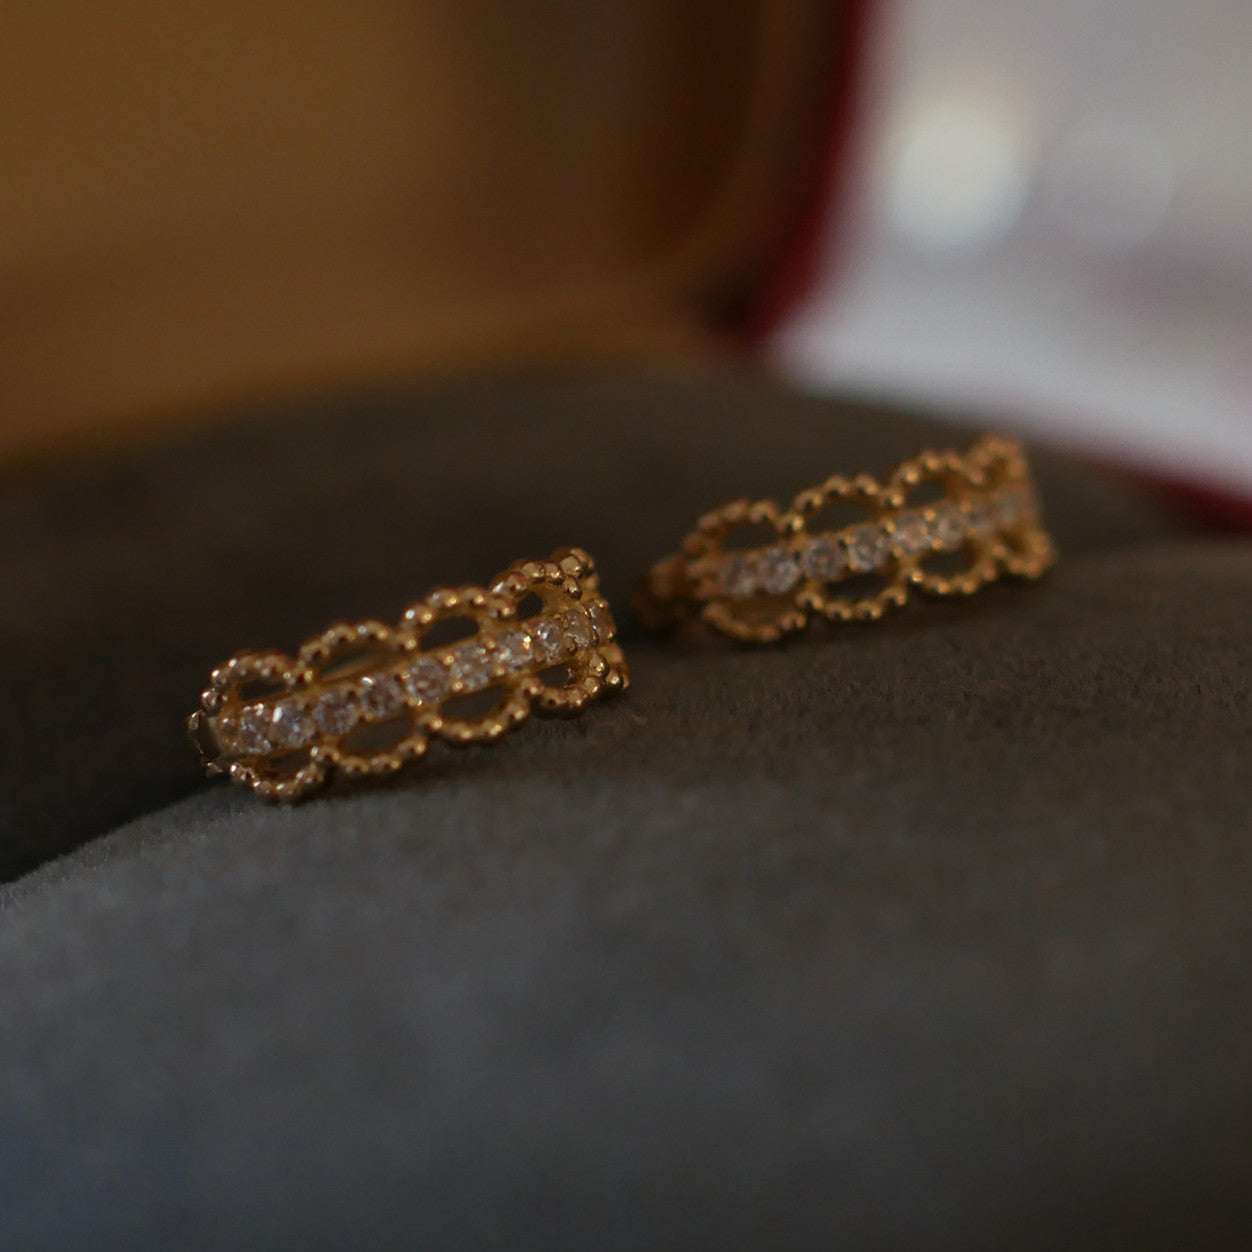 Dainty S925 Sterling Silver Zircon Lace Earrings CZ Small Hoop Earrings, 18k Gold Plated Jewelry AL949